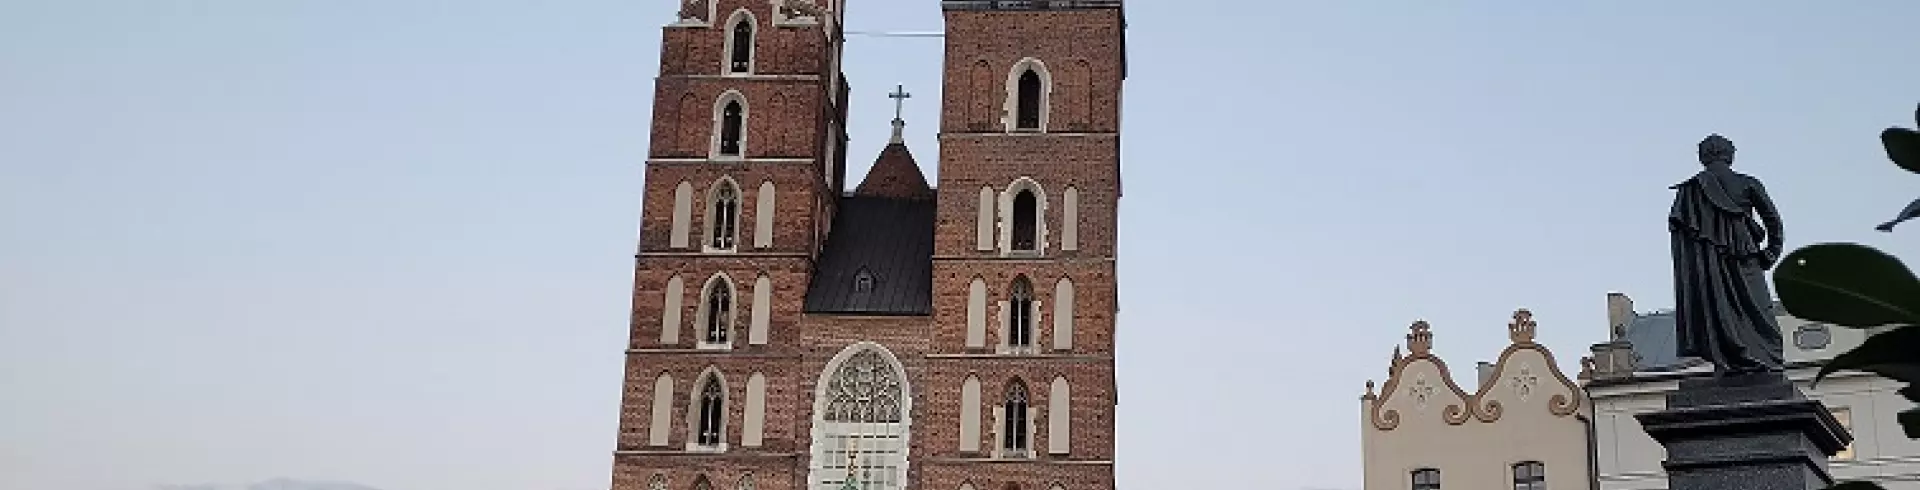 Kraków, Oświęcim